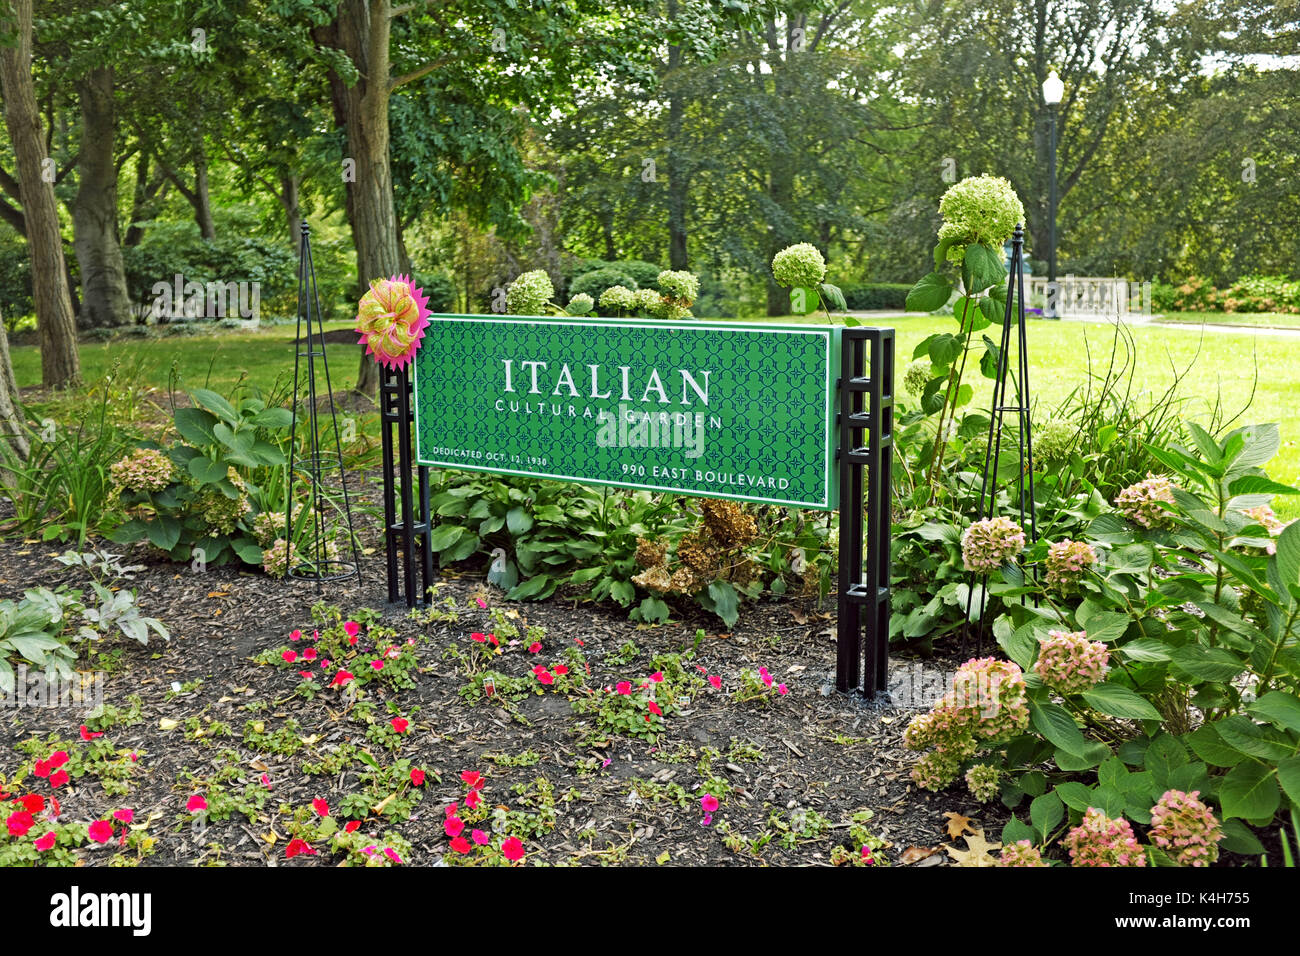 L'Istituto italiano di cultura di giardini in Cleveland, Ohio, Stati Uniti d'America erano dedicati in 1930 come un simbolo del contributo della cultura italiana per la democrazia americana. Foto Stock